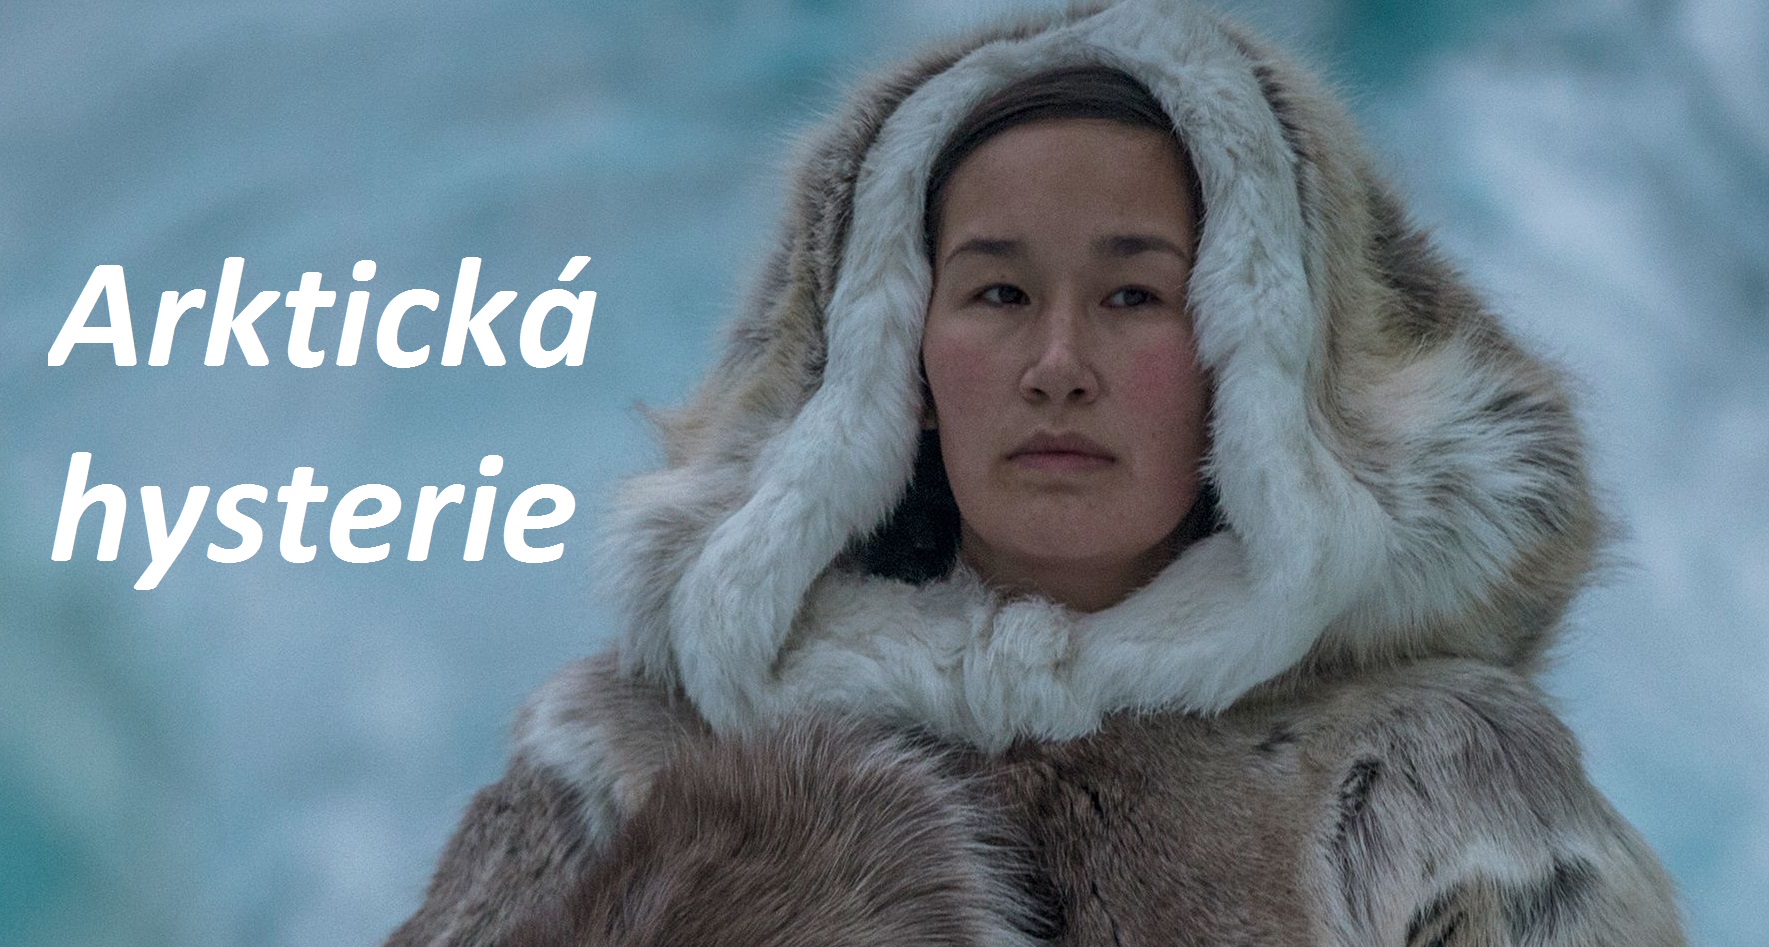 arkticka hysterie priznaky projevy symptomy pricina lecba